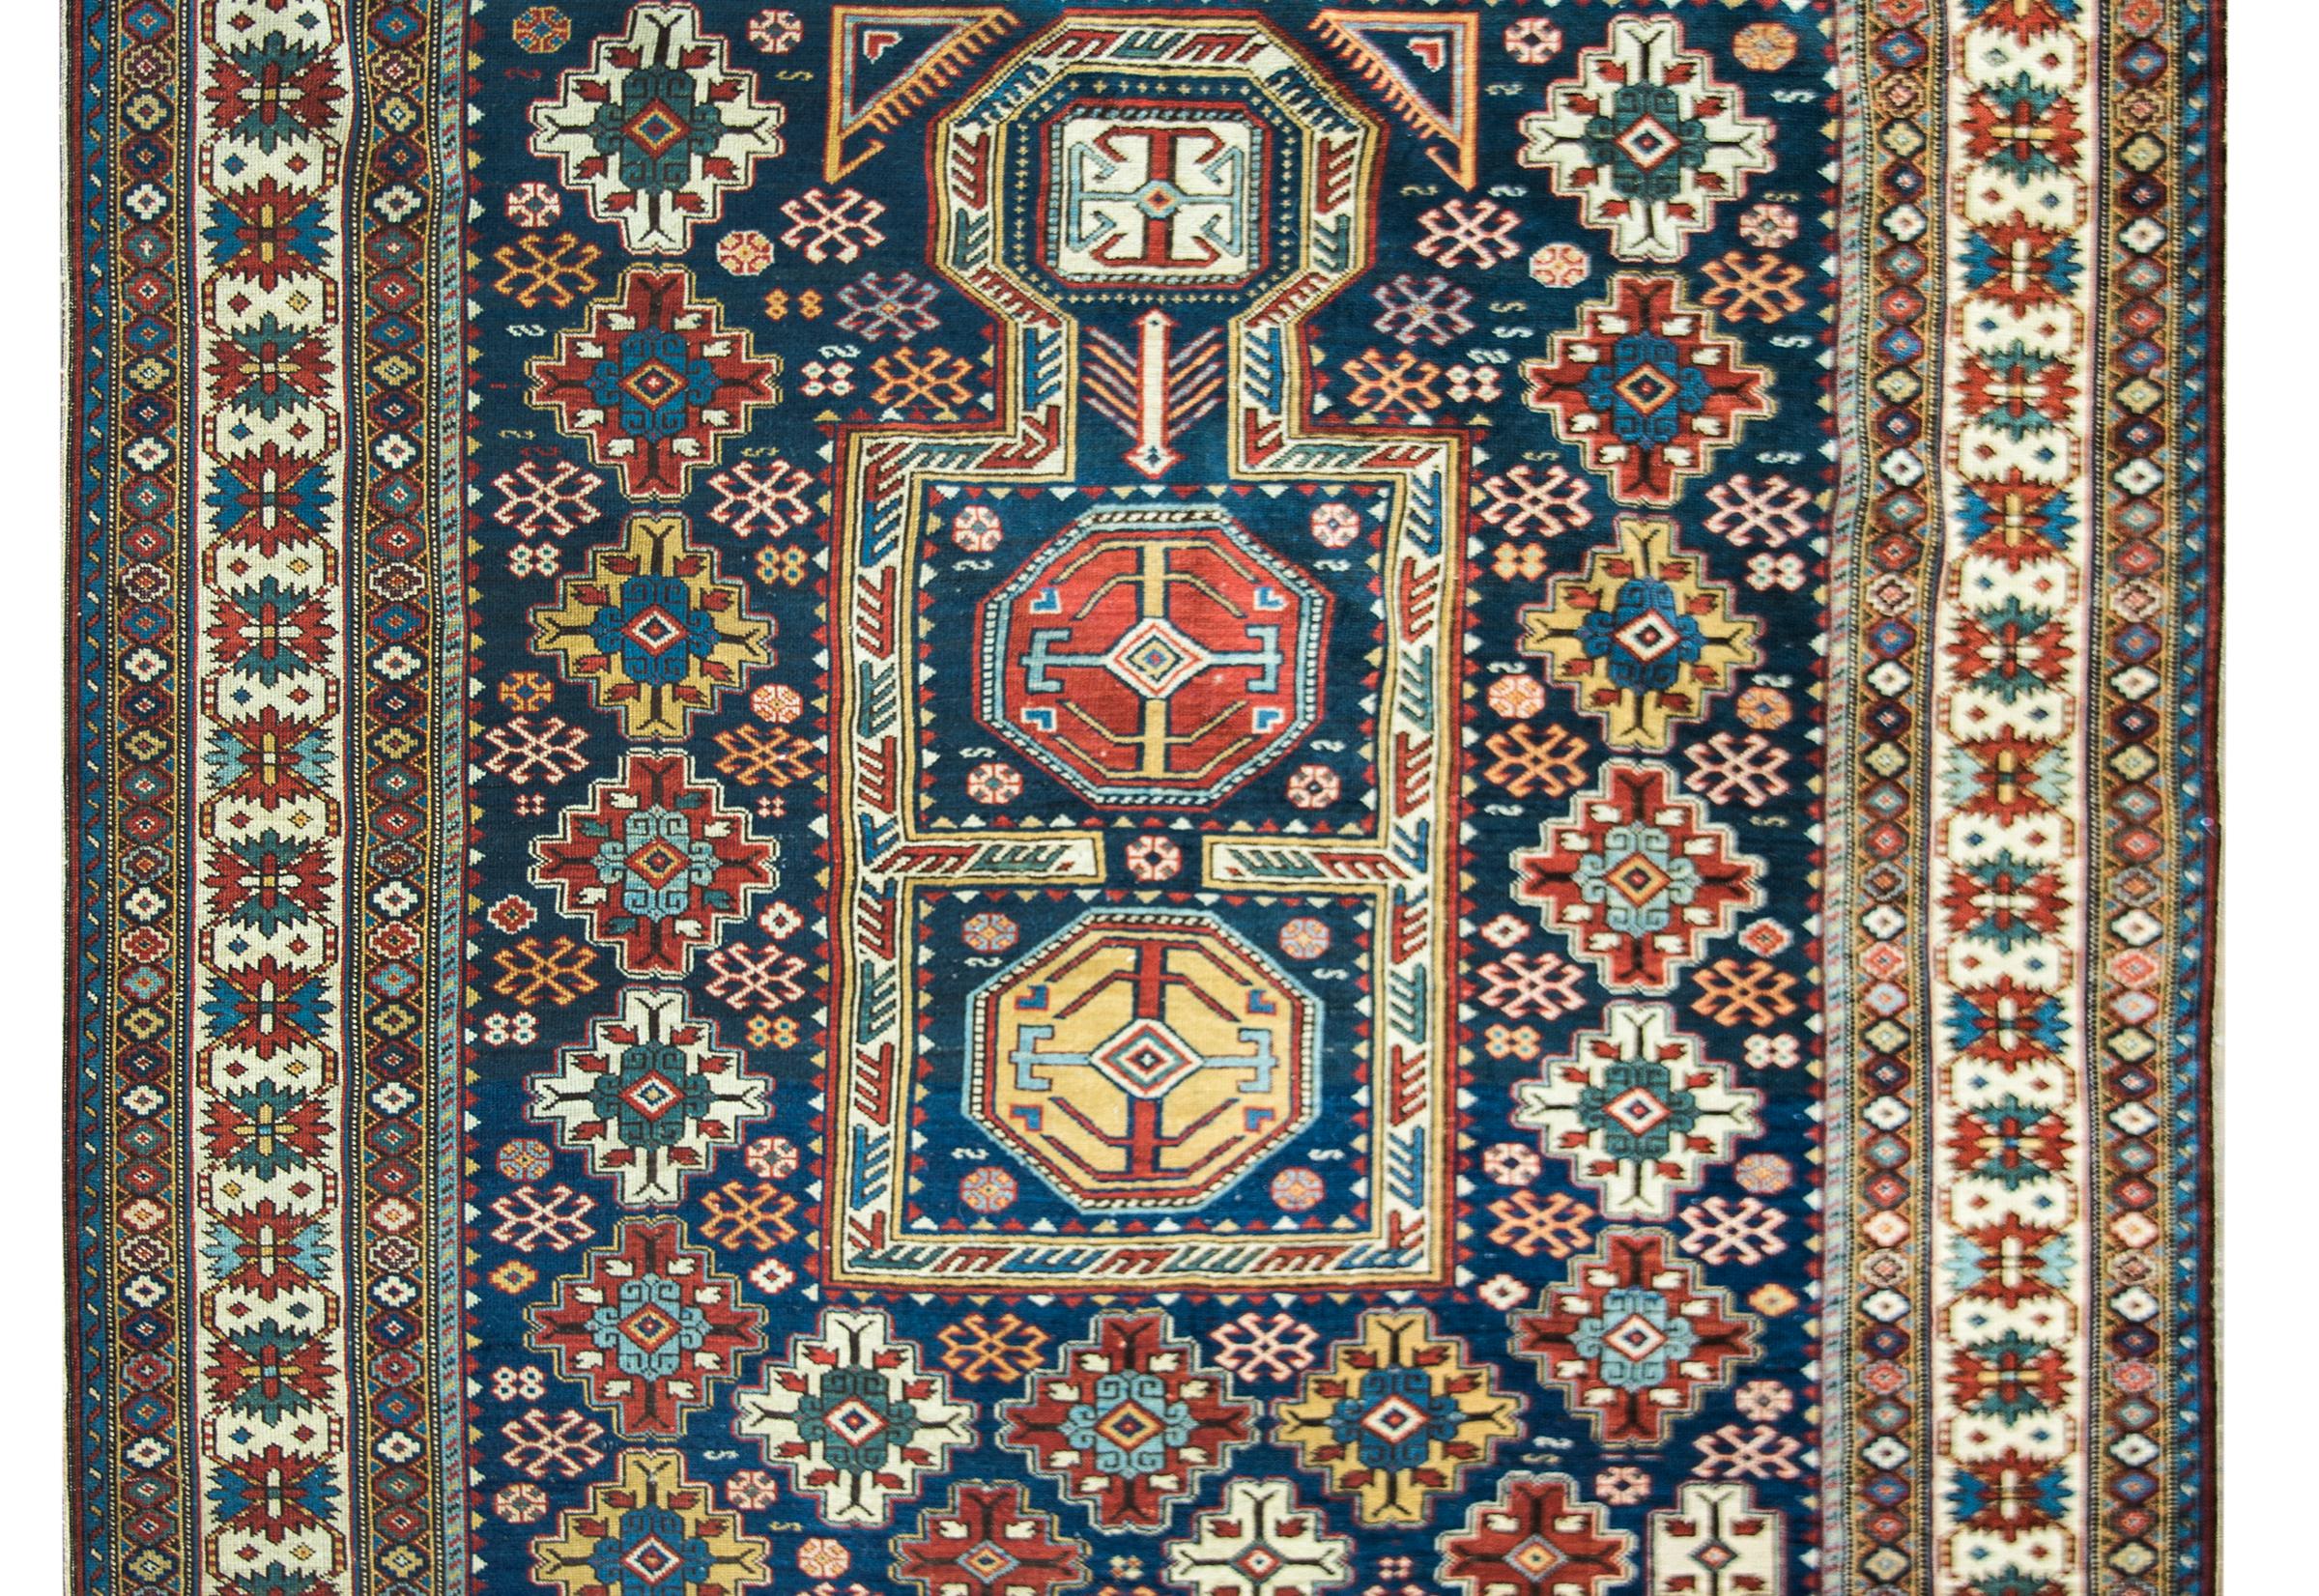 Un étonnant et mémorable tapis persan Shirvan de la fin du 19e siècle avec le plus merveilleux des champs avec des fleurs stylisées répétées entourant un médaillon central avec plus de fleurs stylisées. La bordure est incroyable avec de multiples